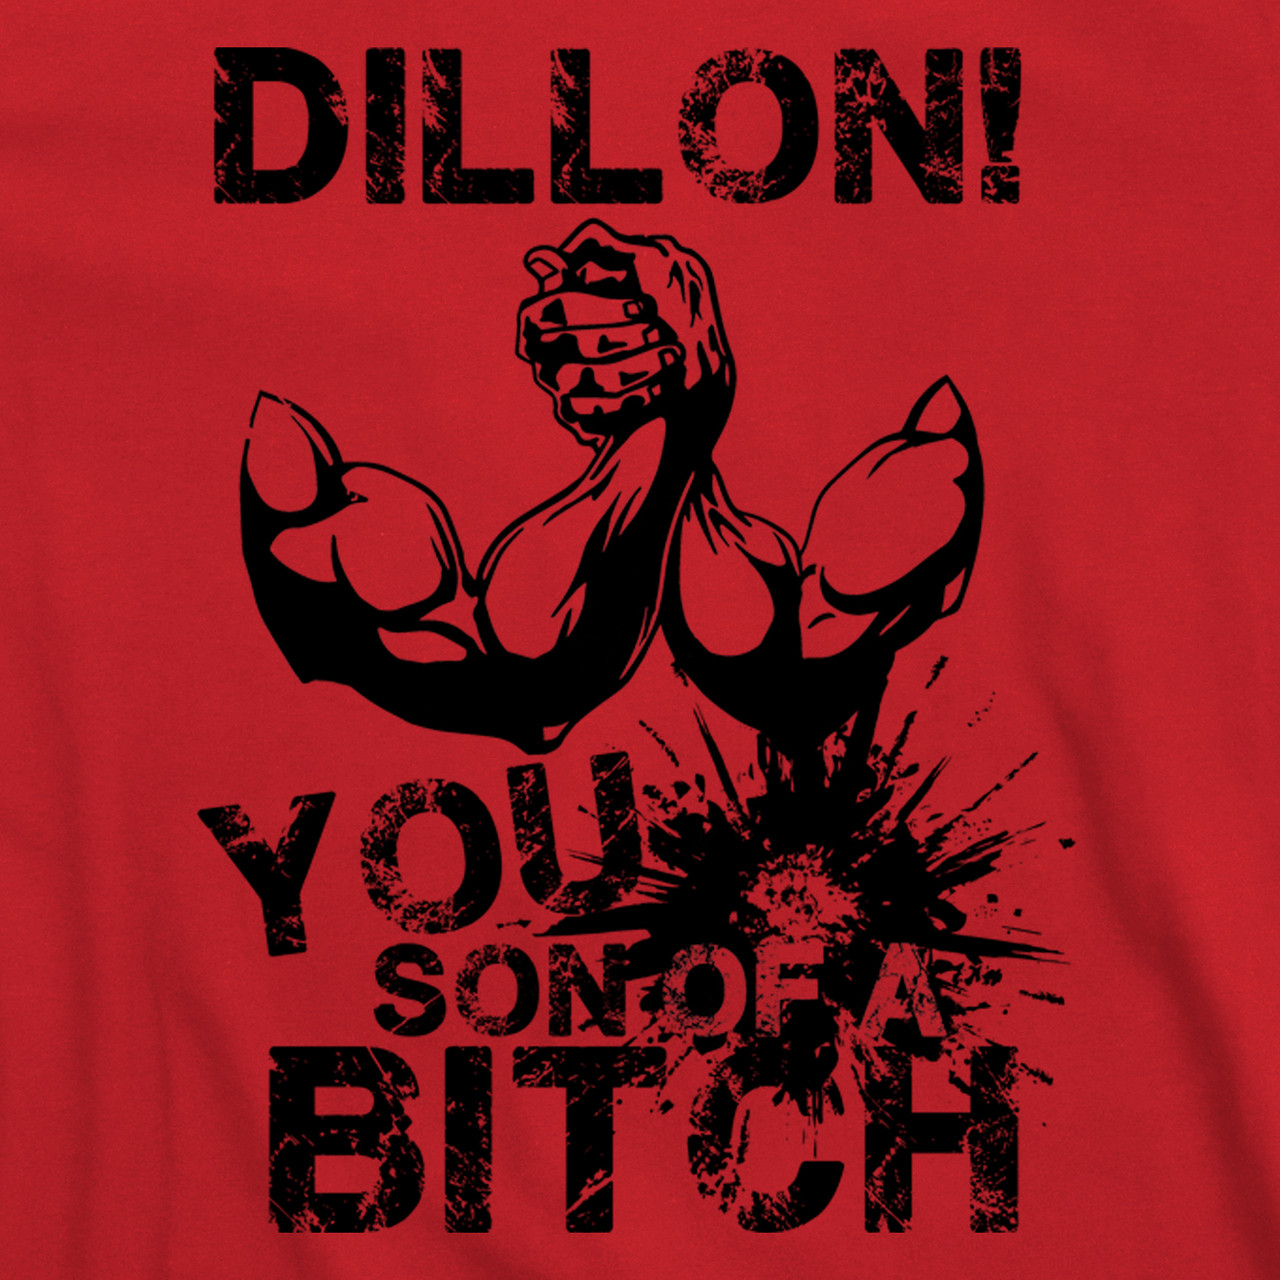 Predator Dillon You Son of A Bch T Shirt 